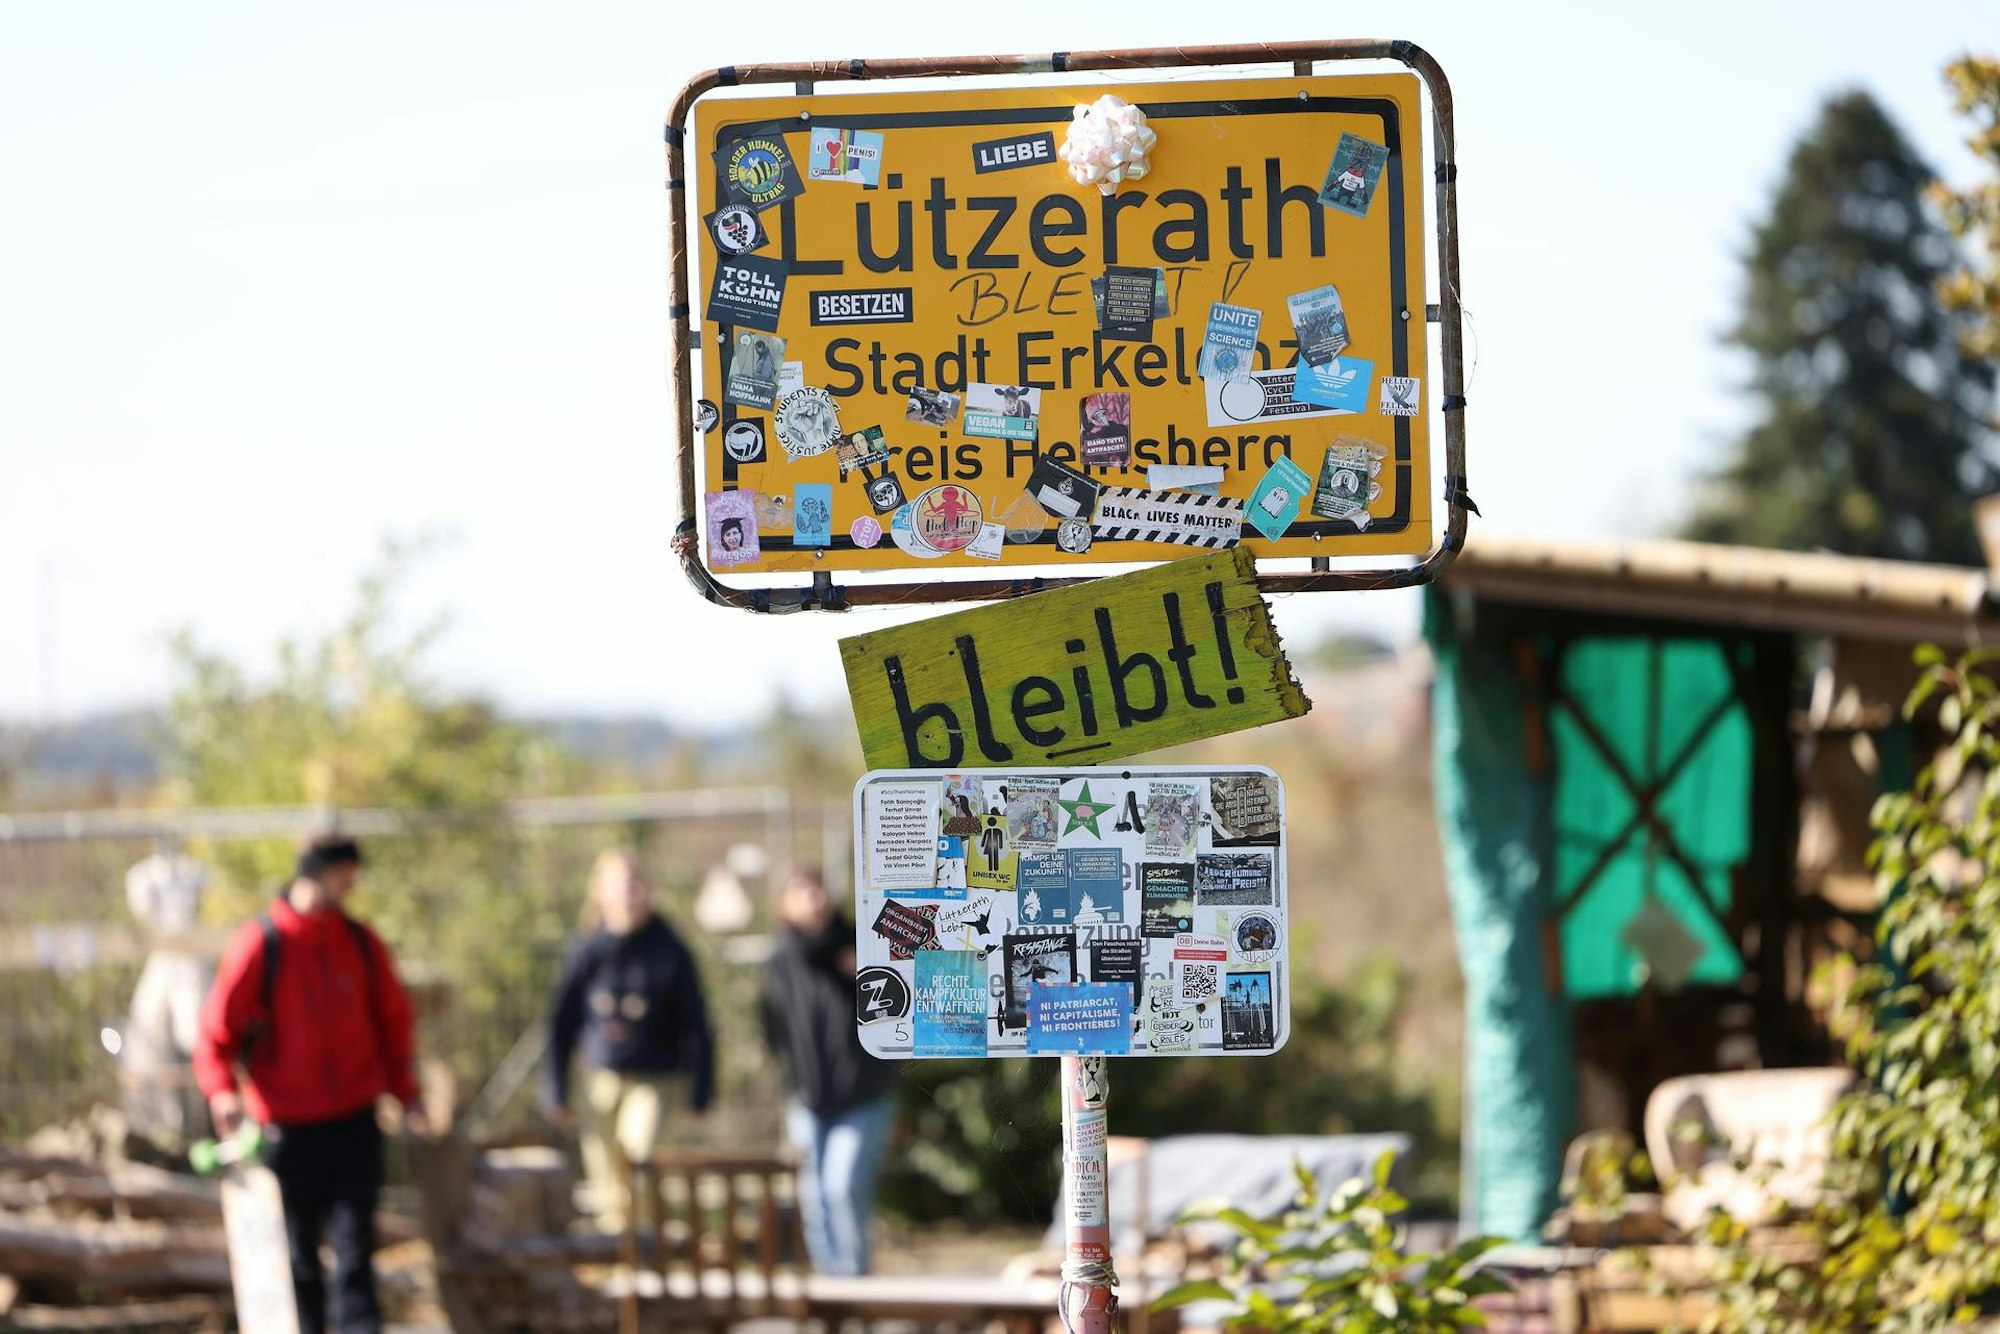 „Lützerath bleibt“, lautet die Botschaft auf dem überklebten Ortseingangschild.